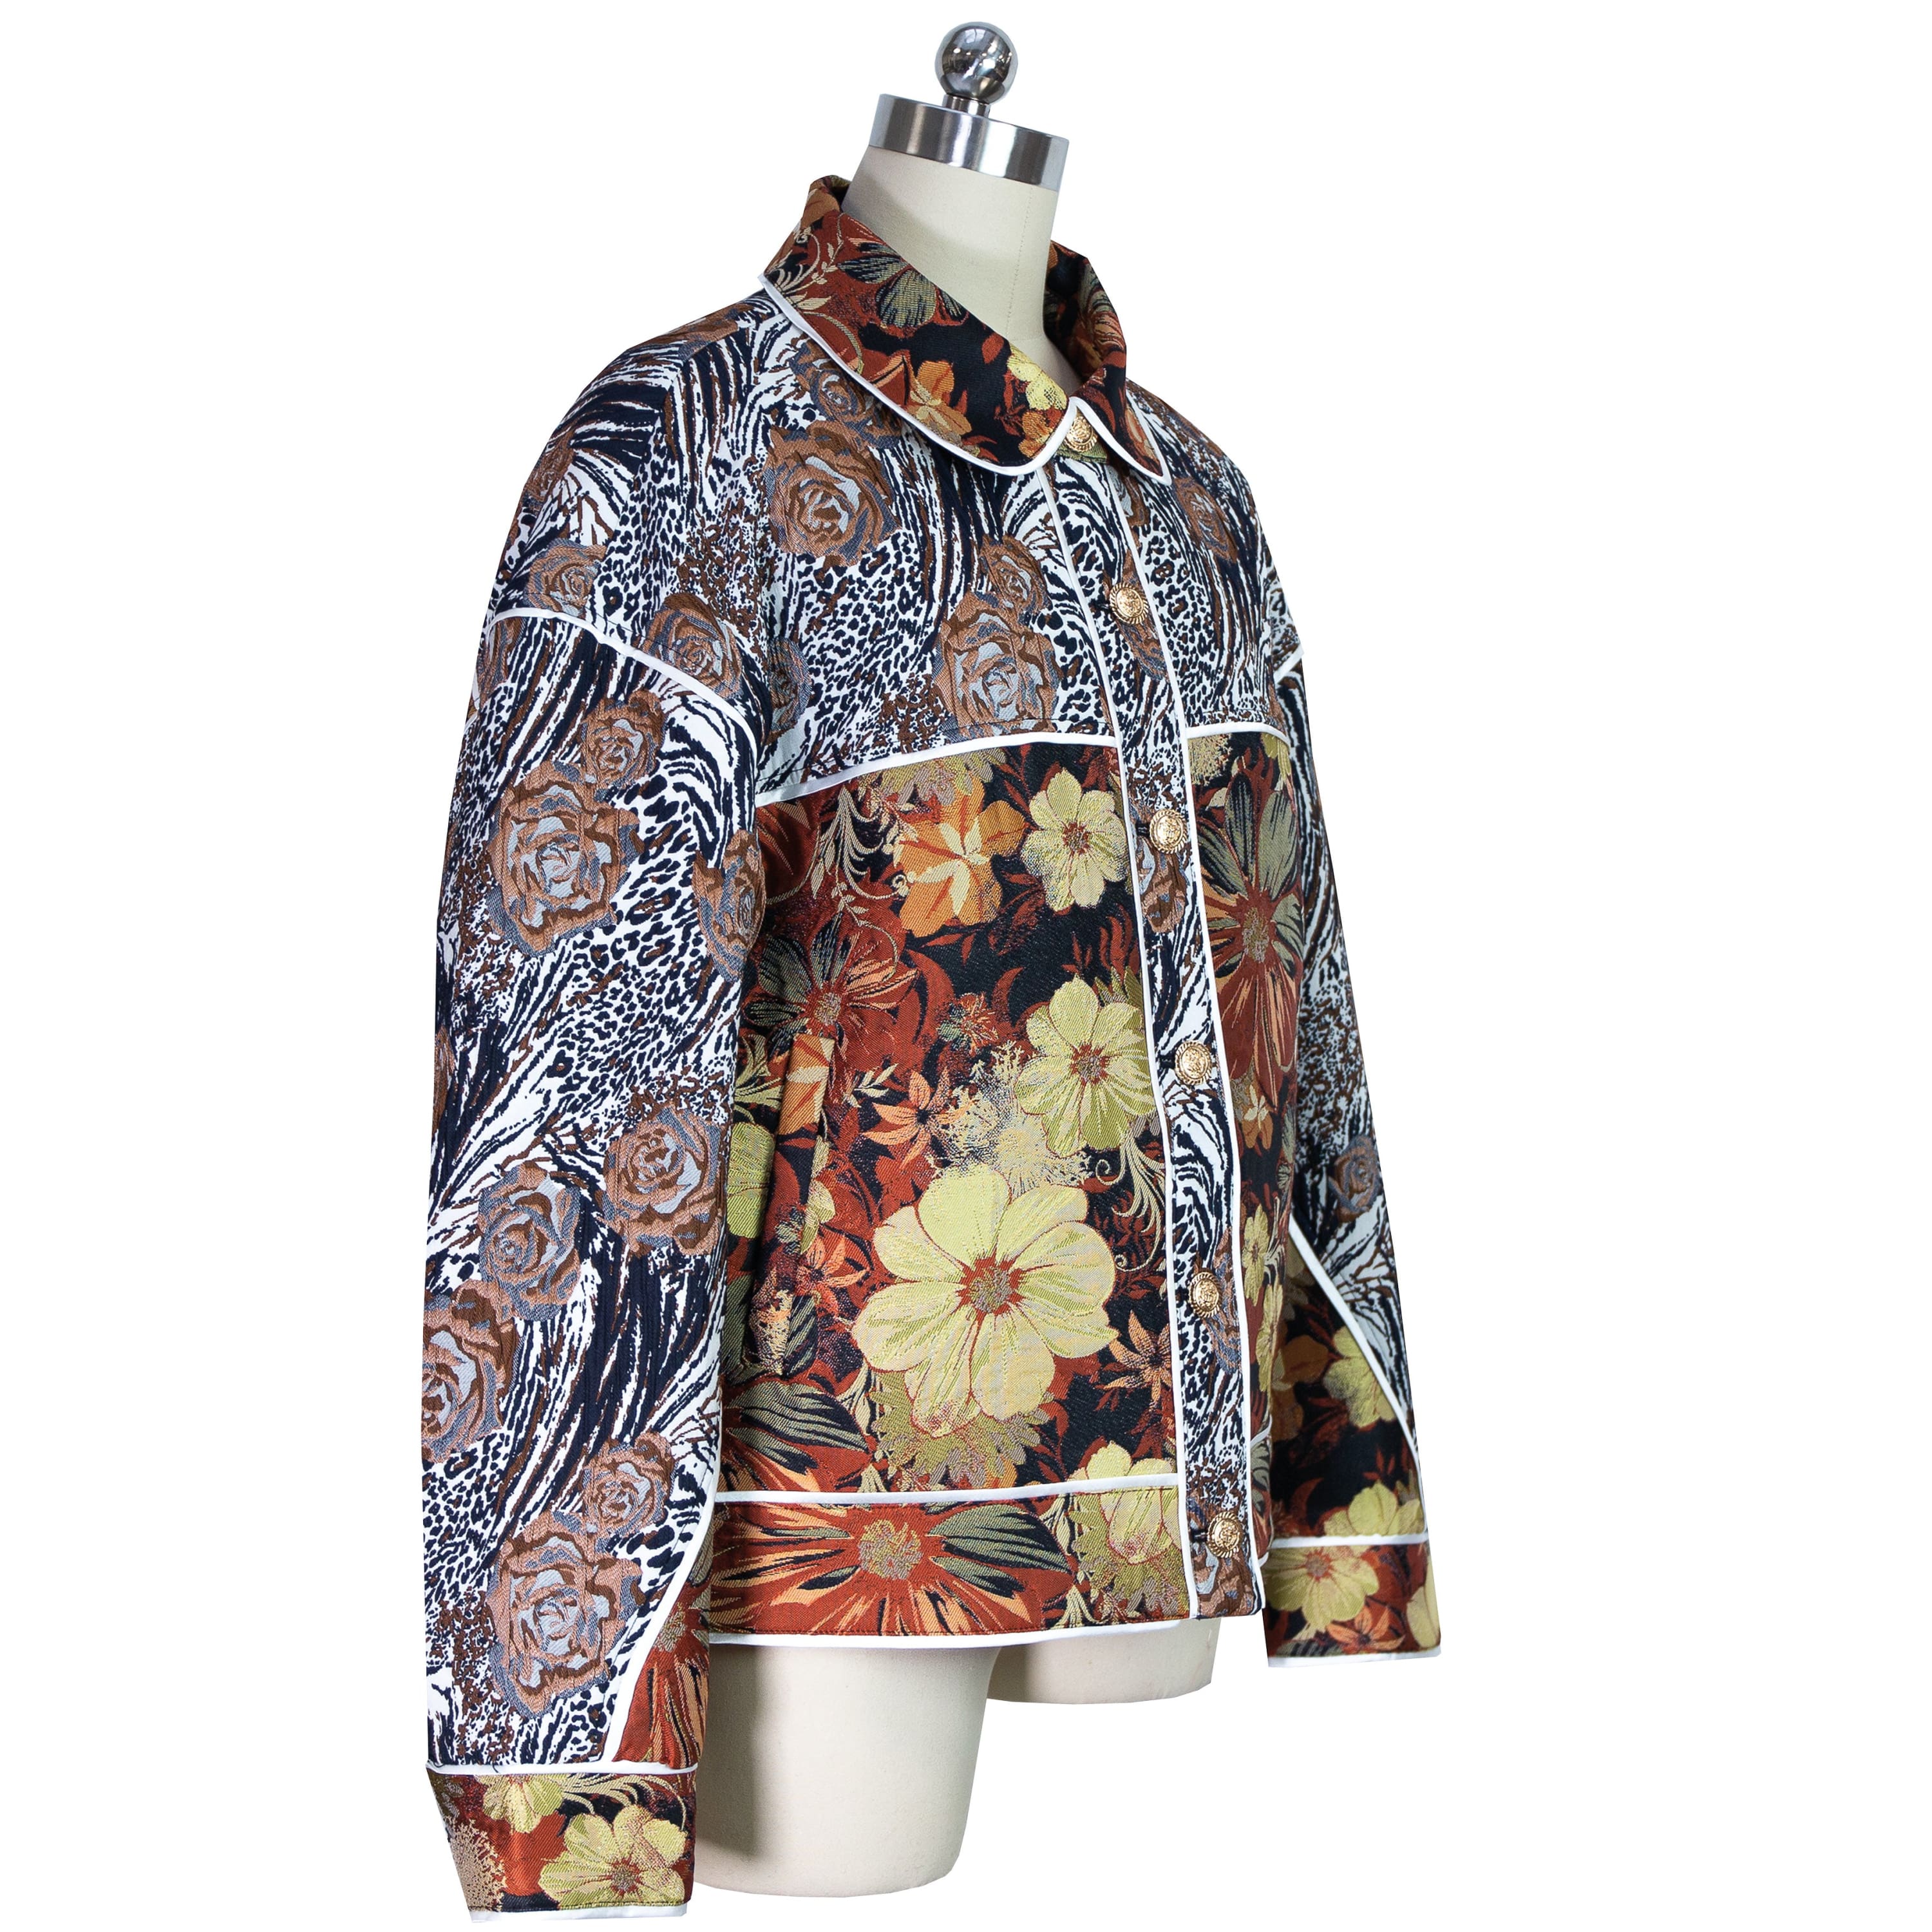 Nyx copper patchwork jacket Studio - Takit ja takit - Takit ja takit